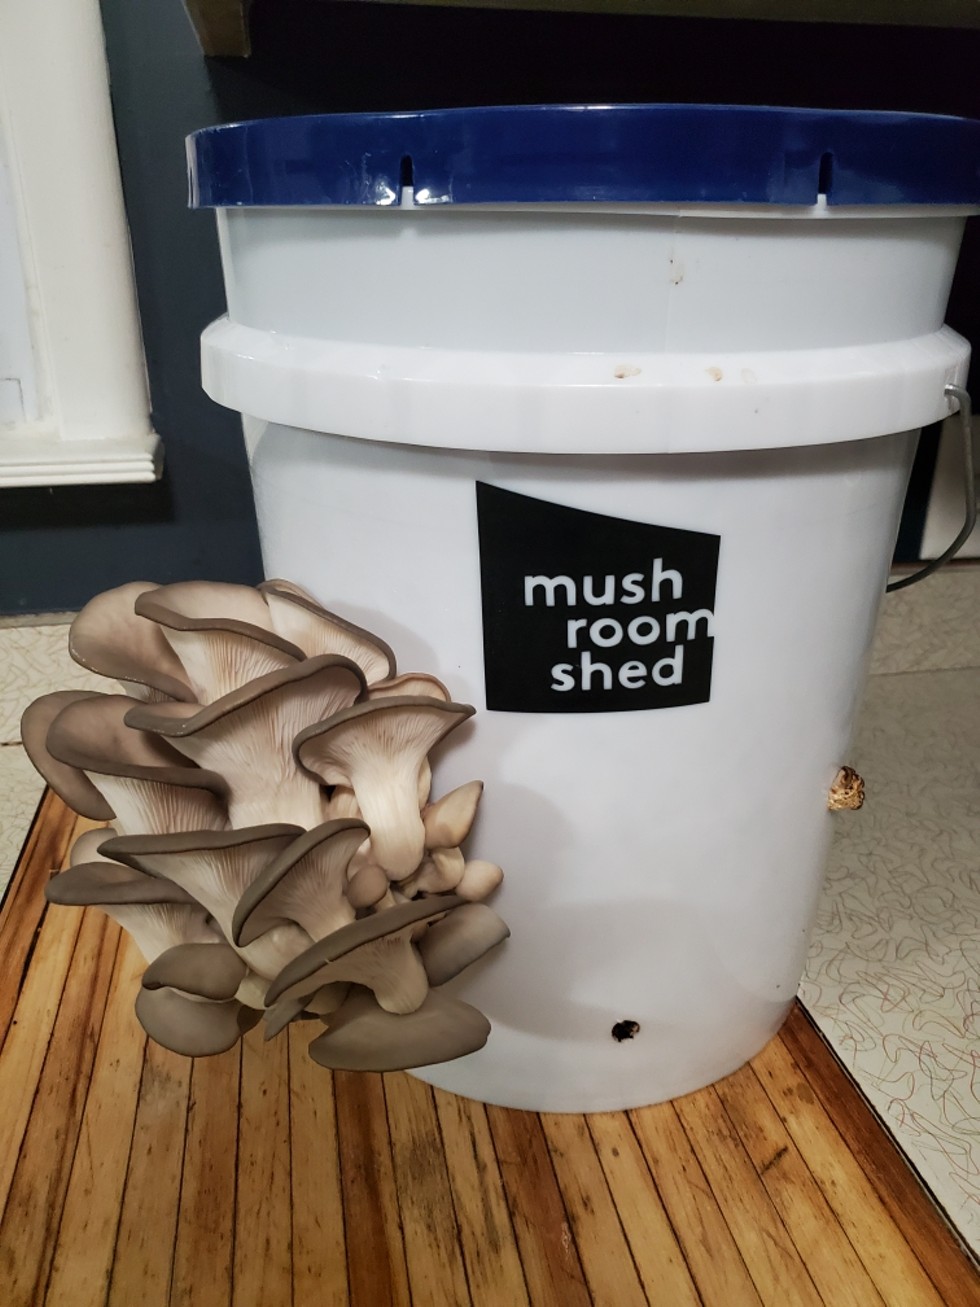 Large mushroom kit, fruiting oyster mushrooms